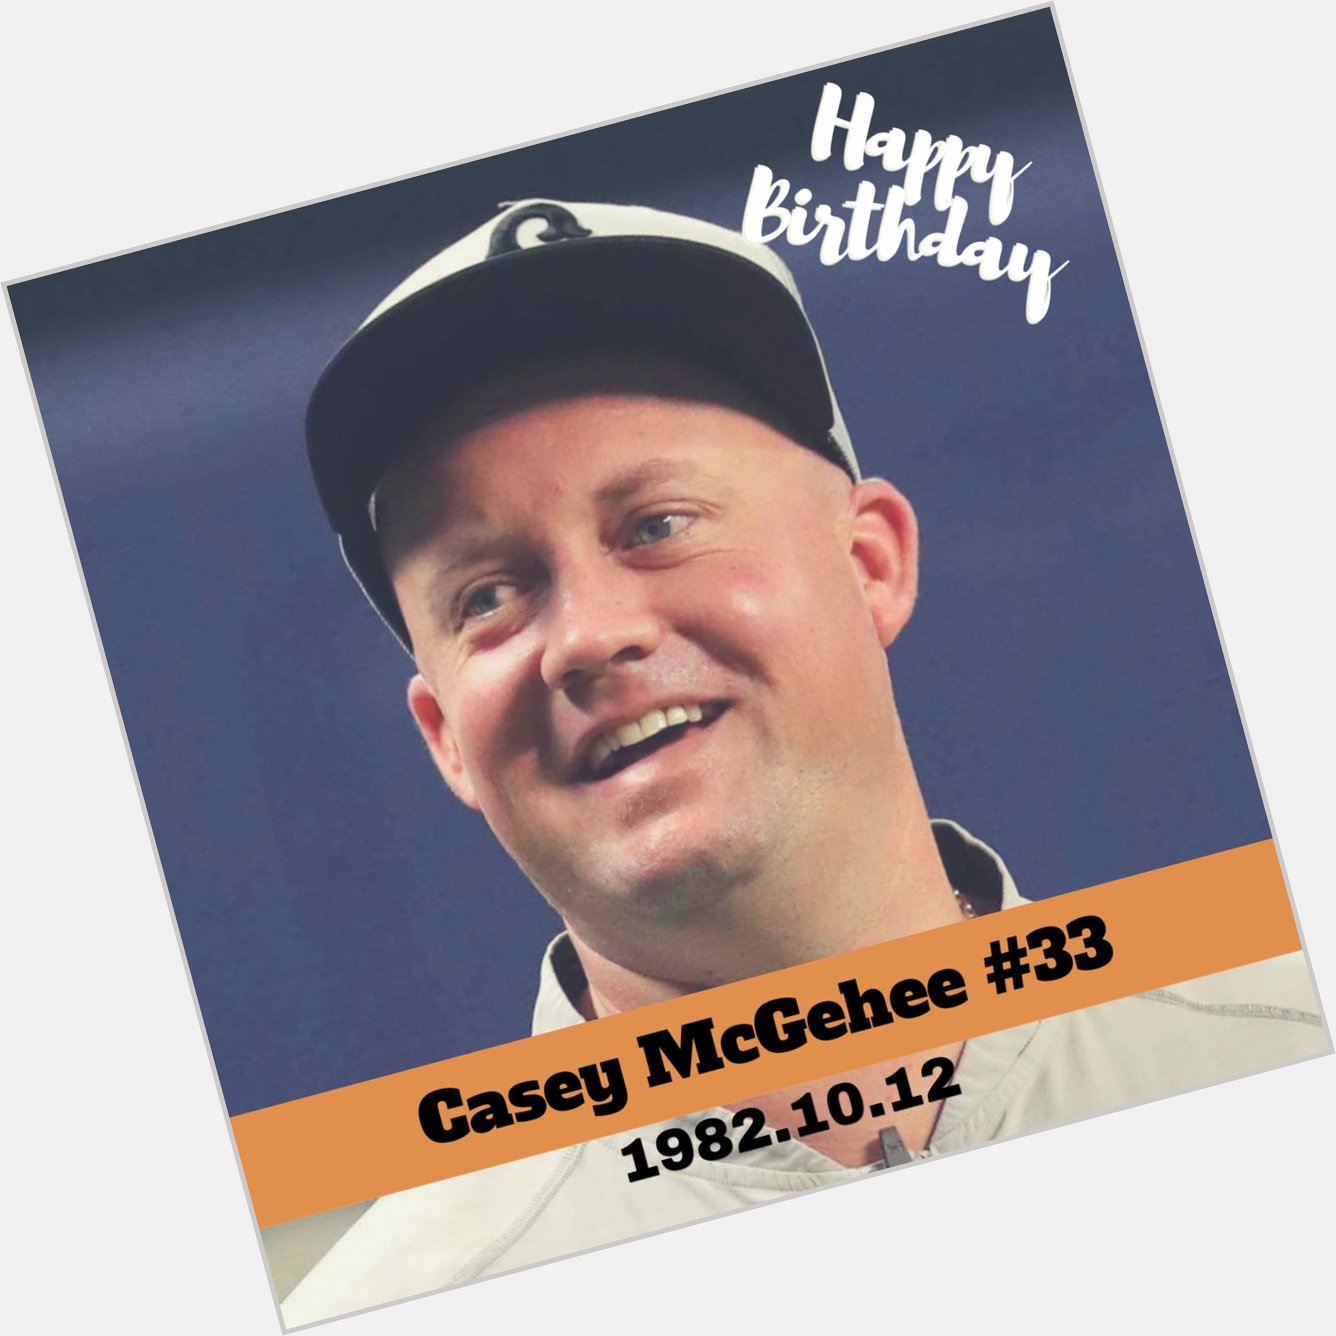              Happy birthday, Casey McGehee    